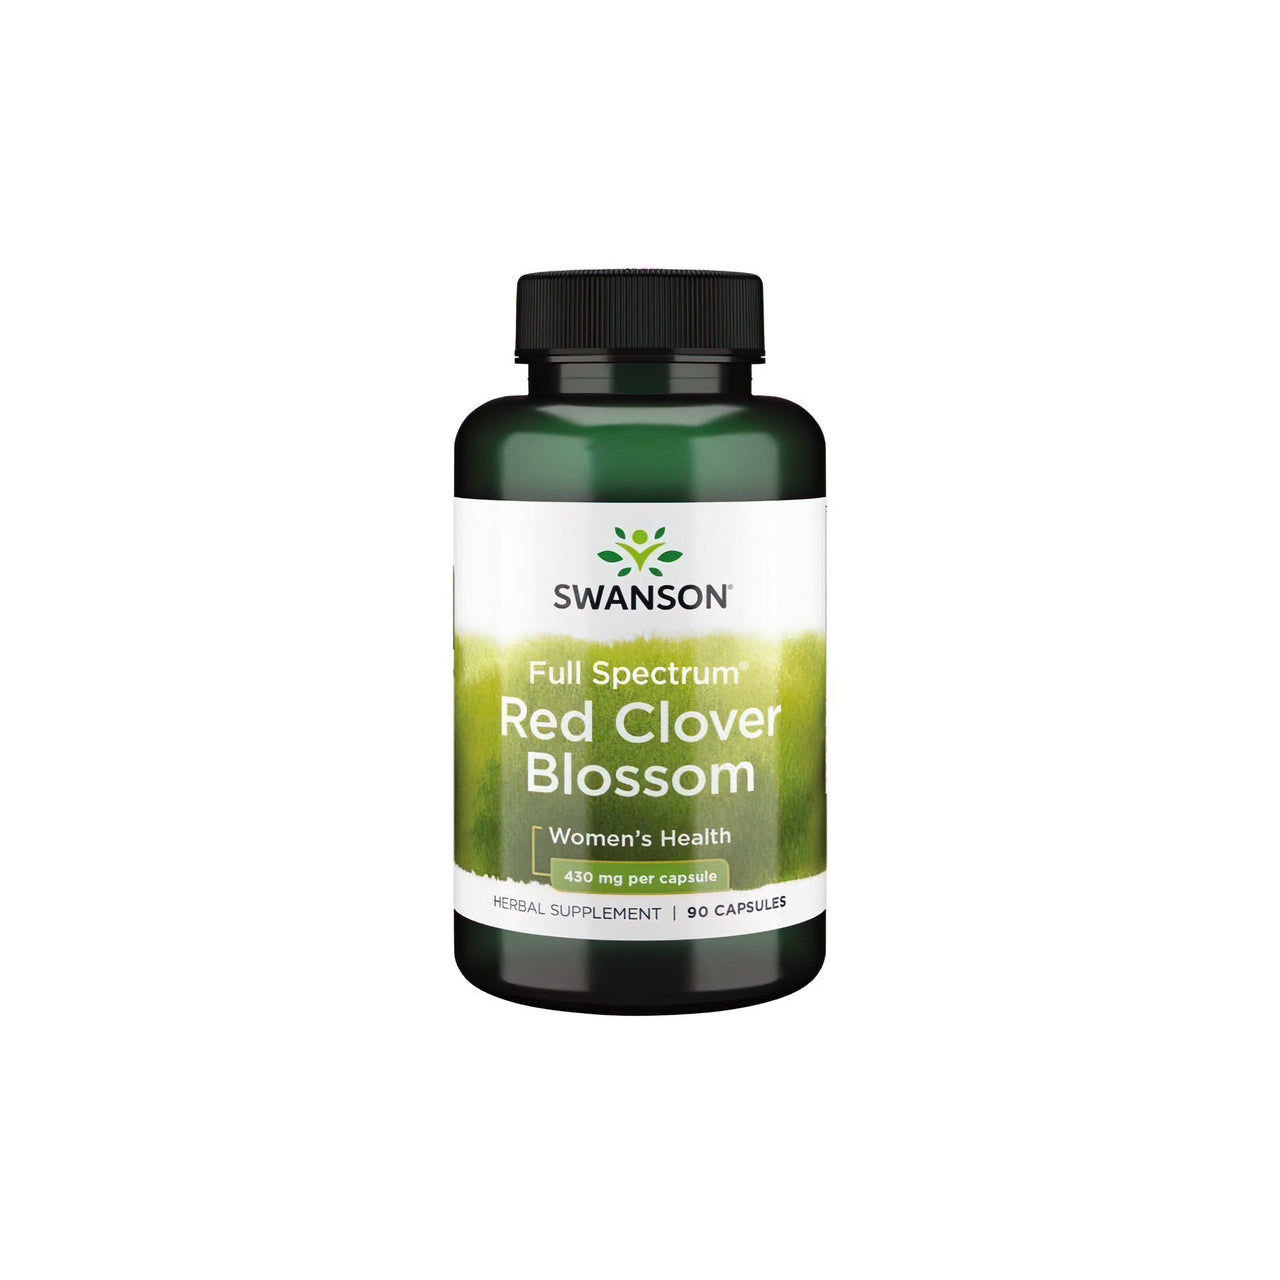 Swanson Il Fiore di Trifoglio Rosso 430 mg 90 capsule è un rimedio naturale che può dare sollievo durante la menopausa o il ciclo mestruale.